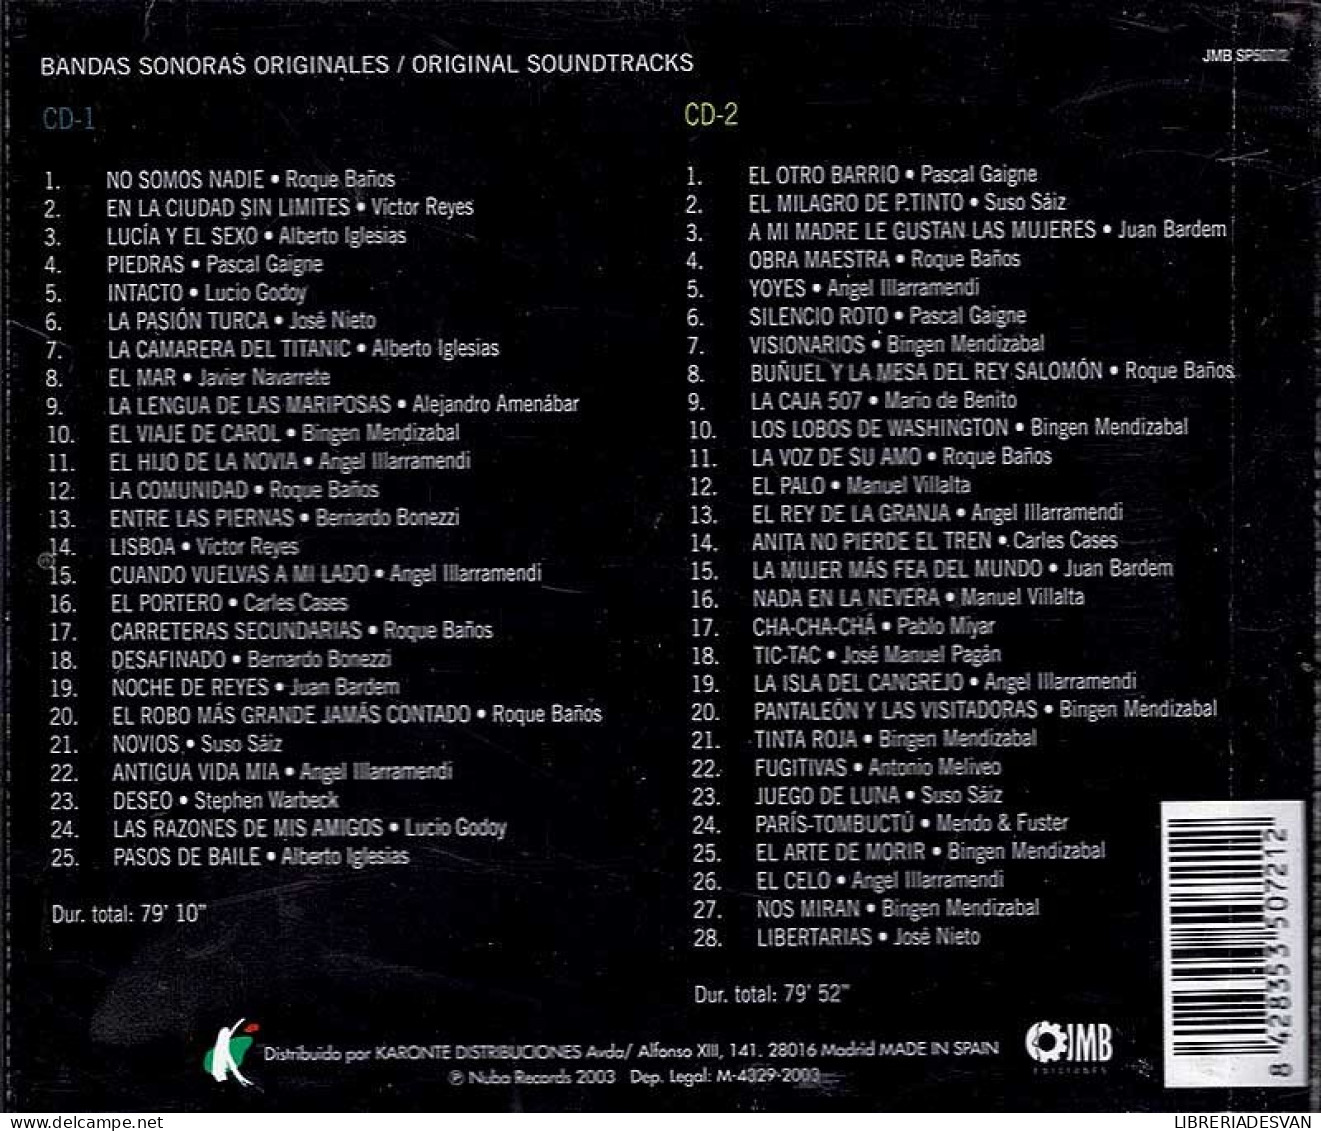 Una Musica De Cine Español (Volumen 1). 2 X CD - Musica Di Film